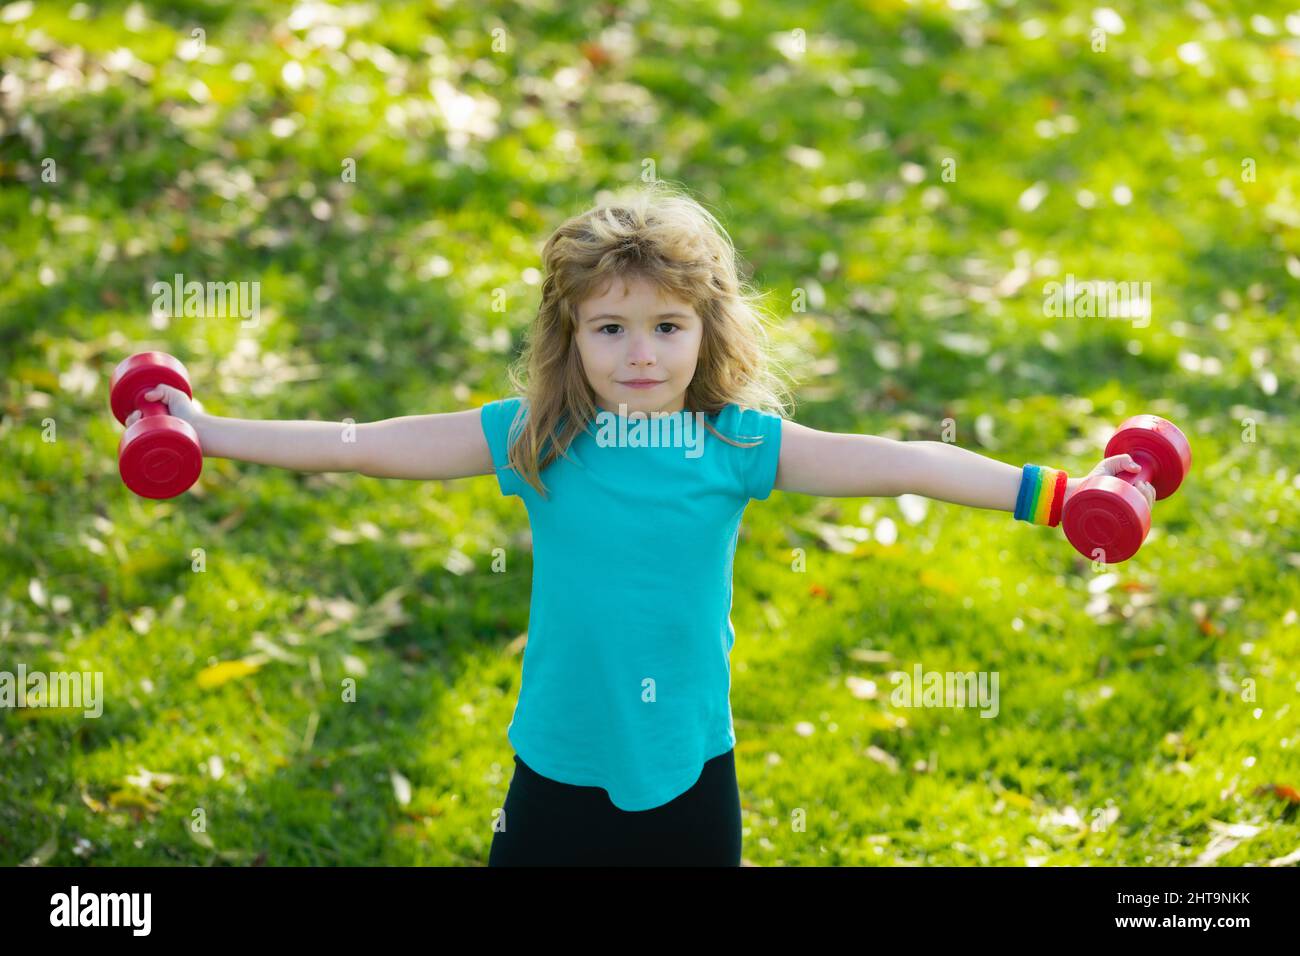 Sportkinder. Gesundes Kind Junge mit Hantel Übung im Freien. Kleine Kinder  üben Hanteln Übungen im Park Stockfotografie - Alamy